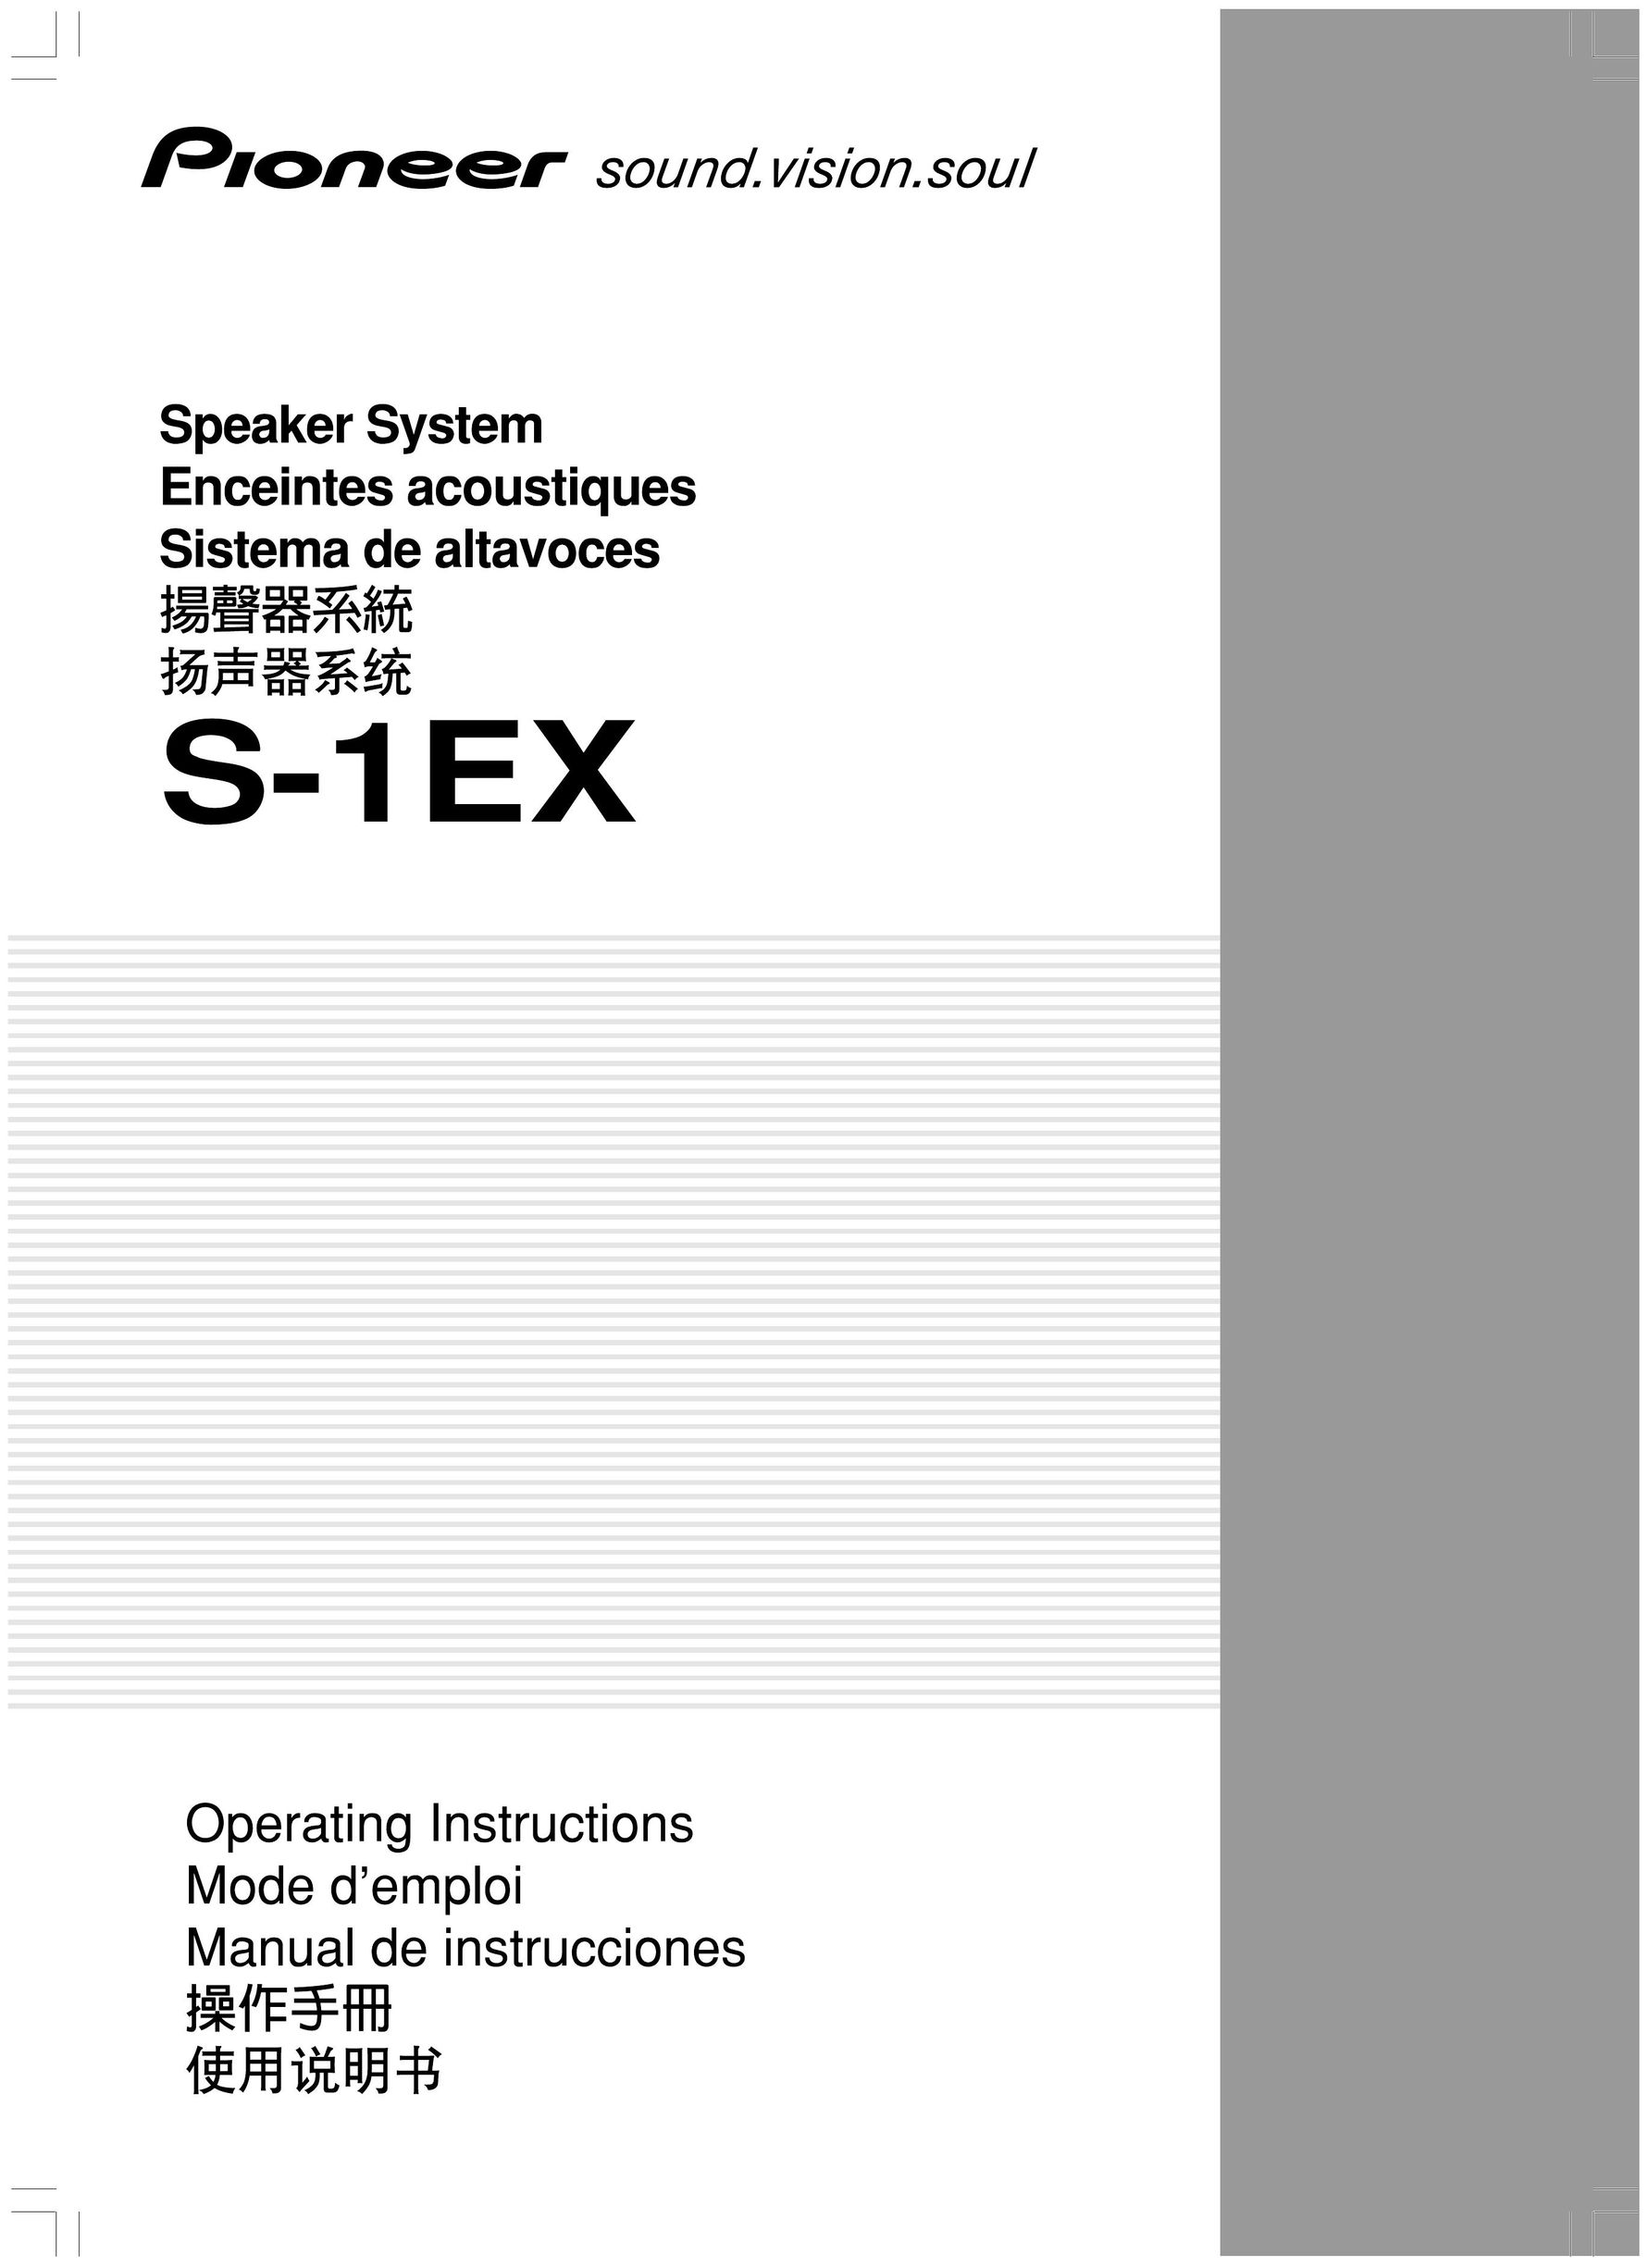 Pioneer S-1EX Portable Speaker User Manual